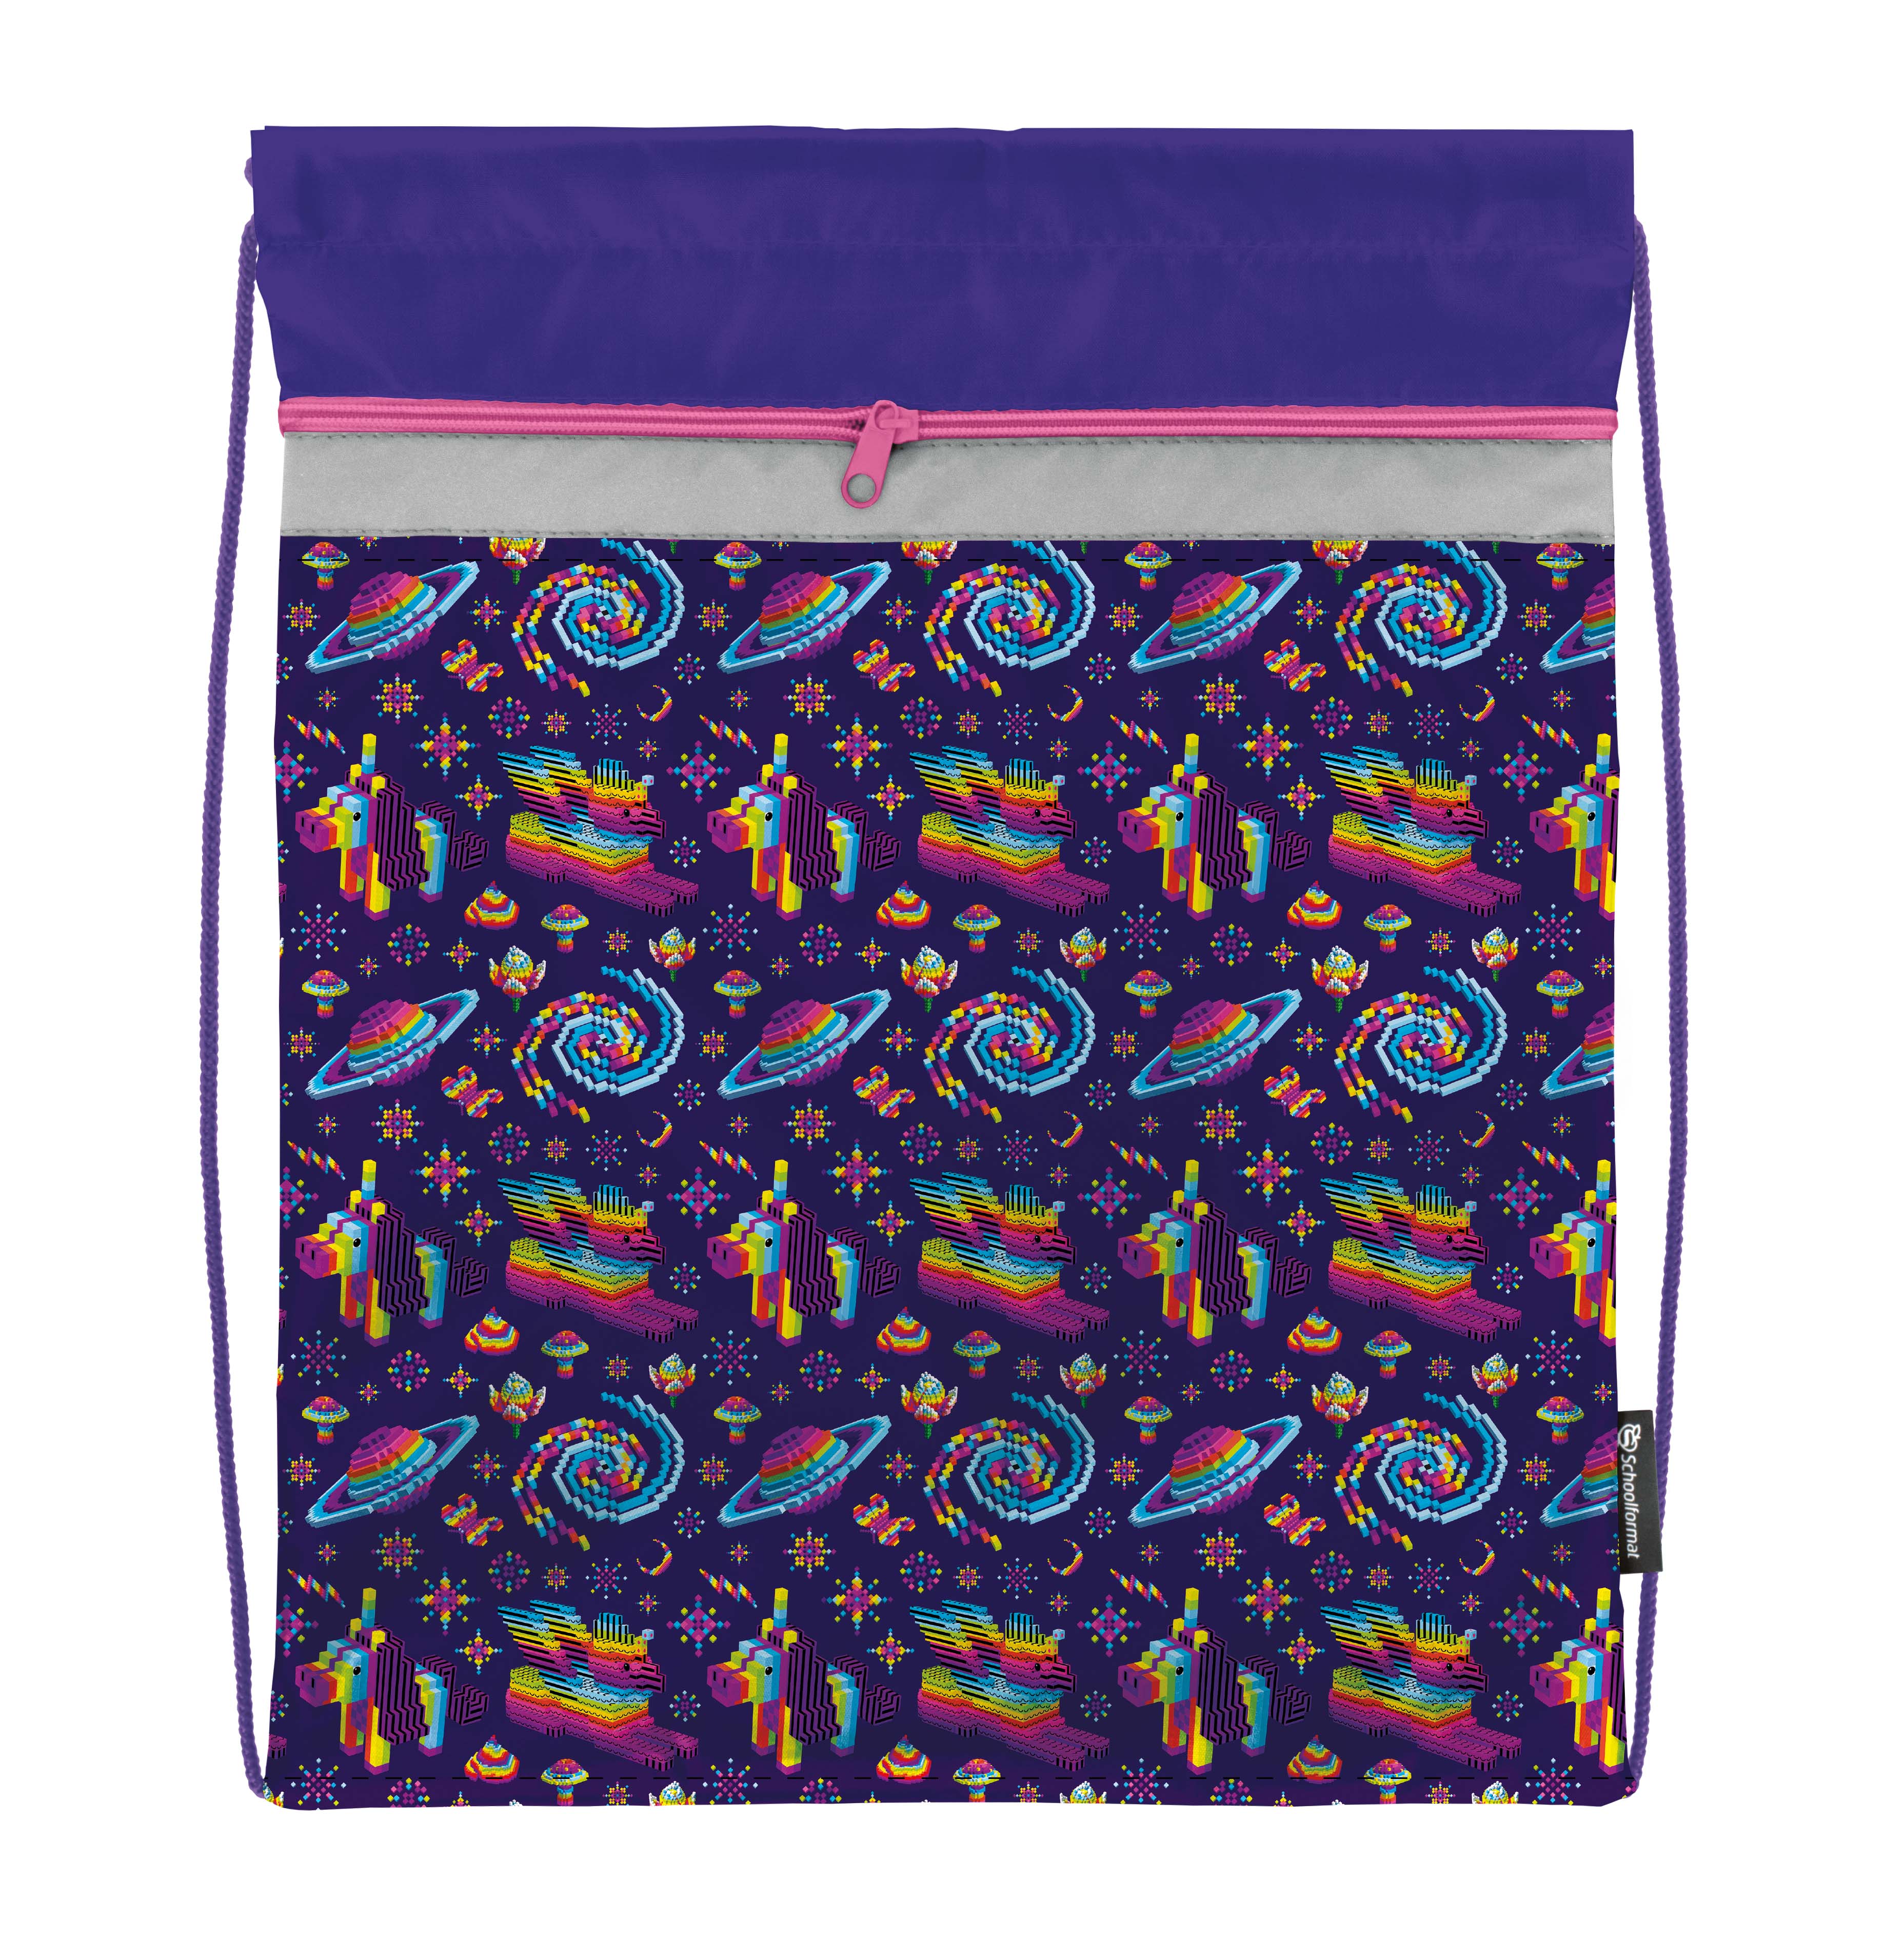 Мешок для обуви Schoolformat БЕЗУМНЫЙ СТИЛЬ 42х34 см фиолетовый, 1 отделение с большим карманом на молнии, для девочек оптом